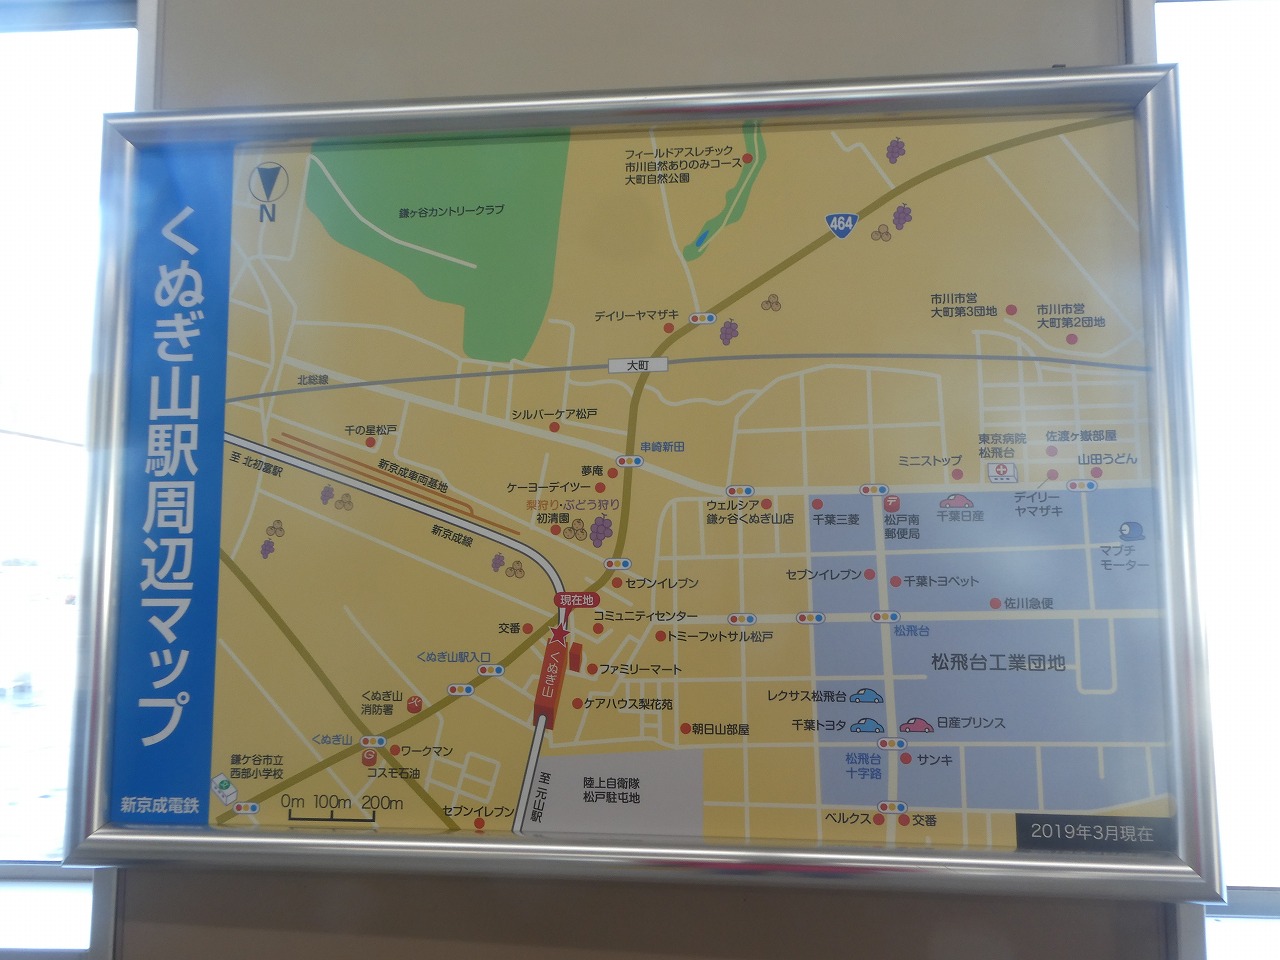 くぬぎ山駅周辺マップ